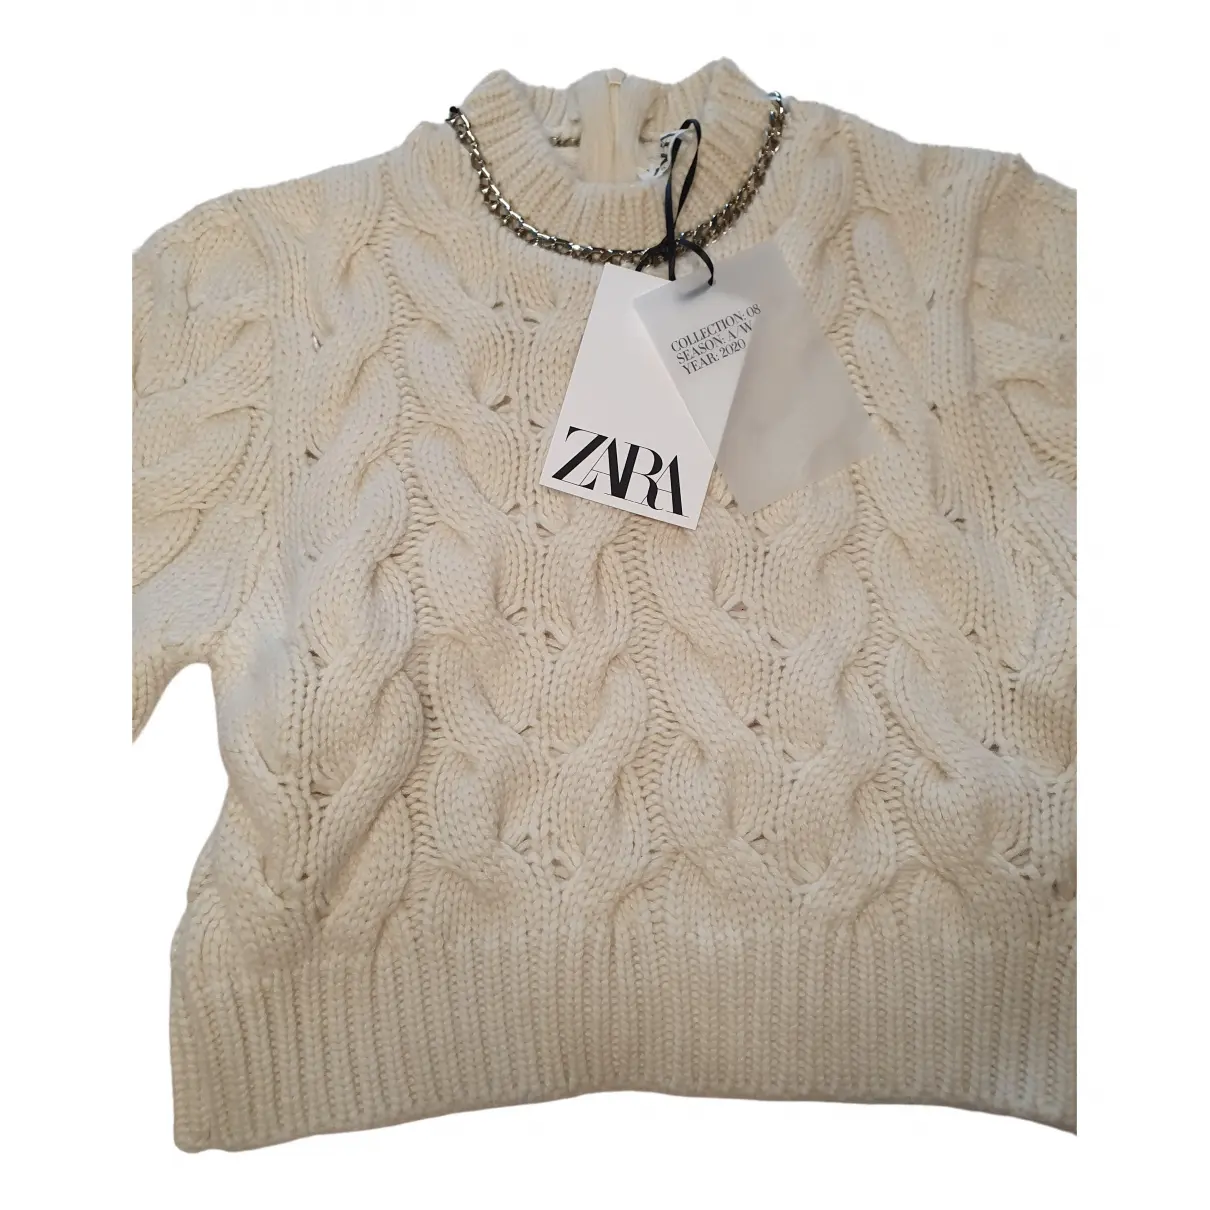 Buy Zara Cashmere jumper online